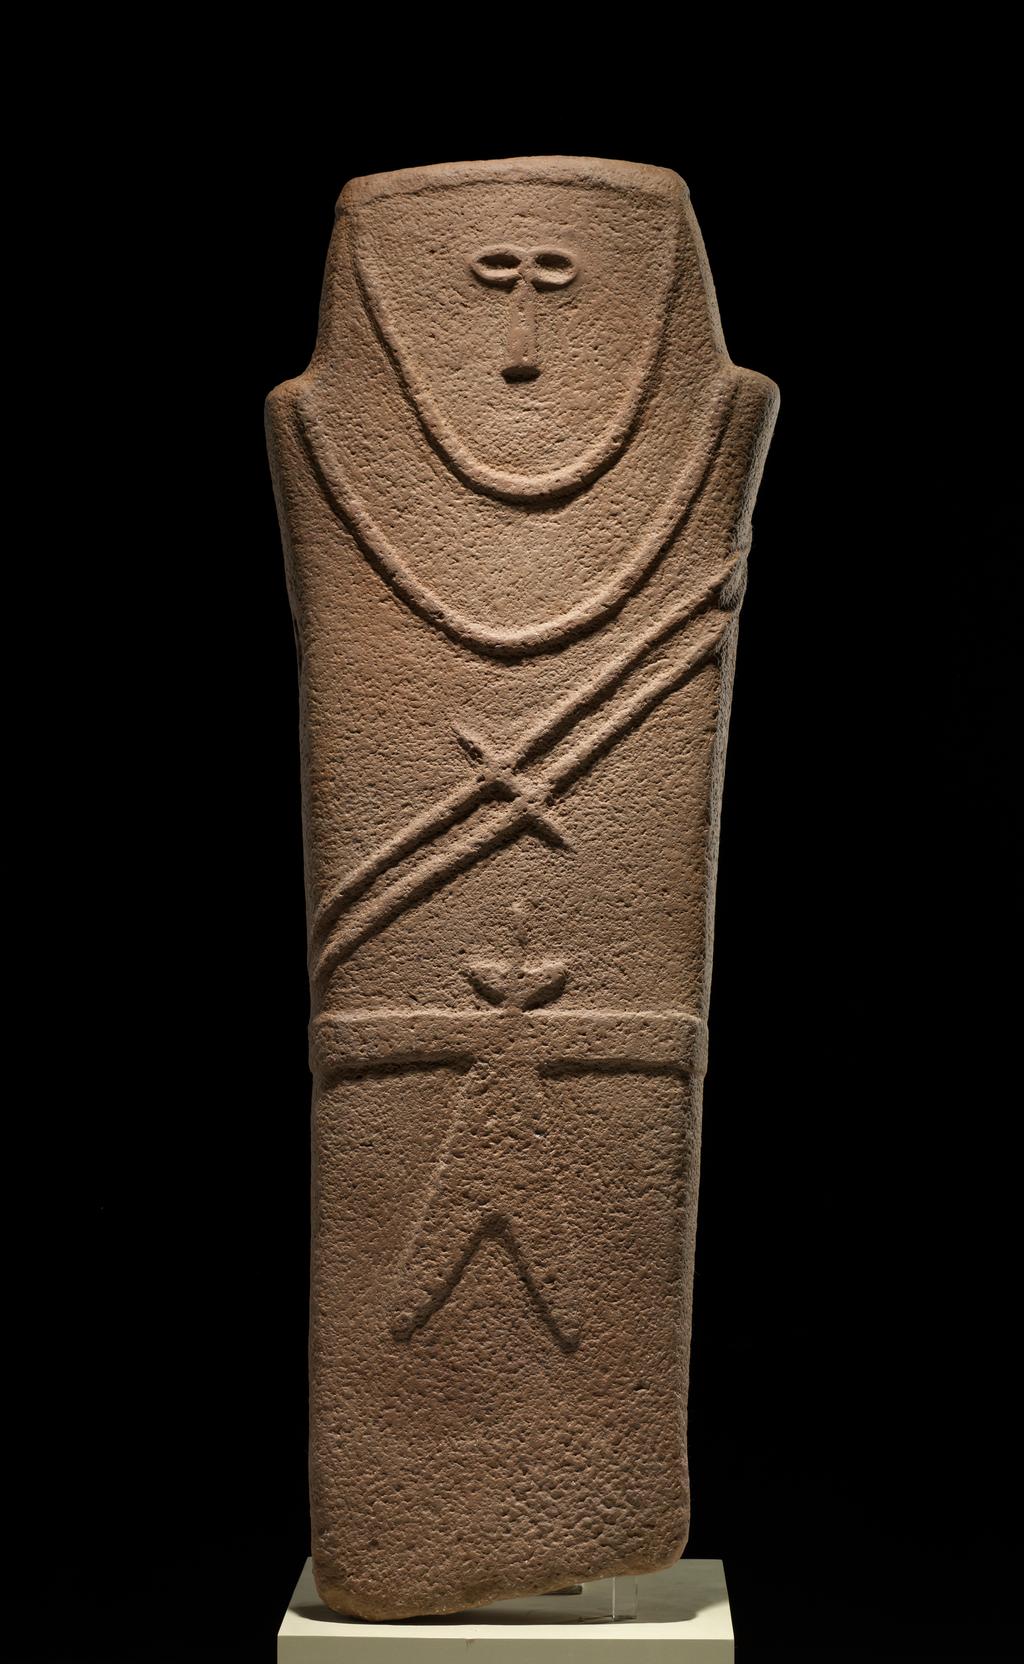 Anthropomorphic Stele Anthropomorphic: having human characteristics Stele: Large upright stone 4000 BCE Among